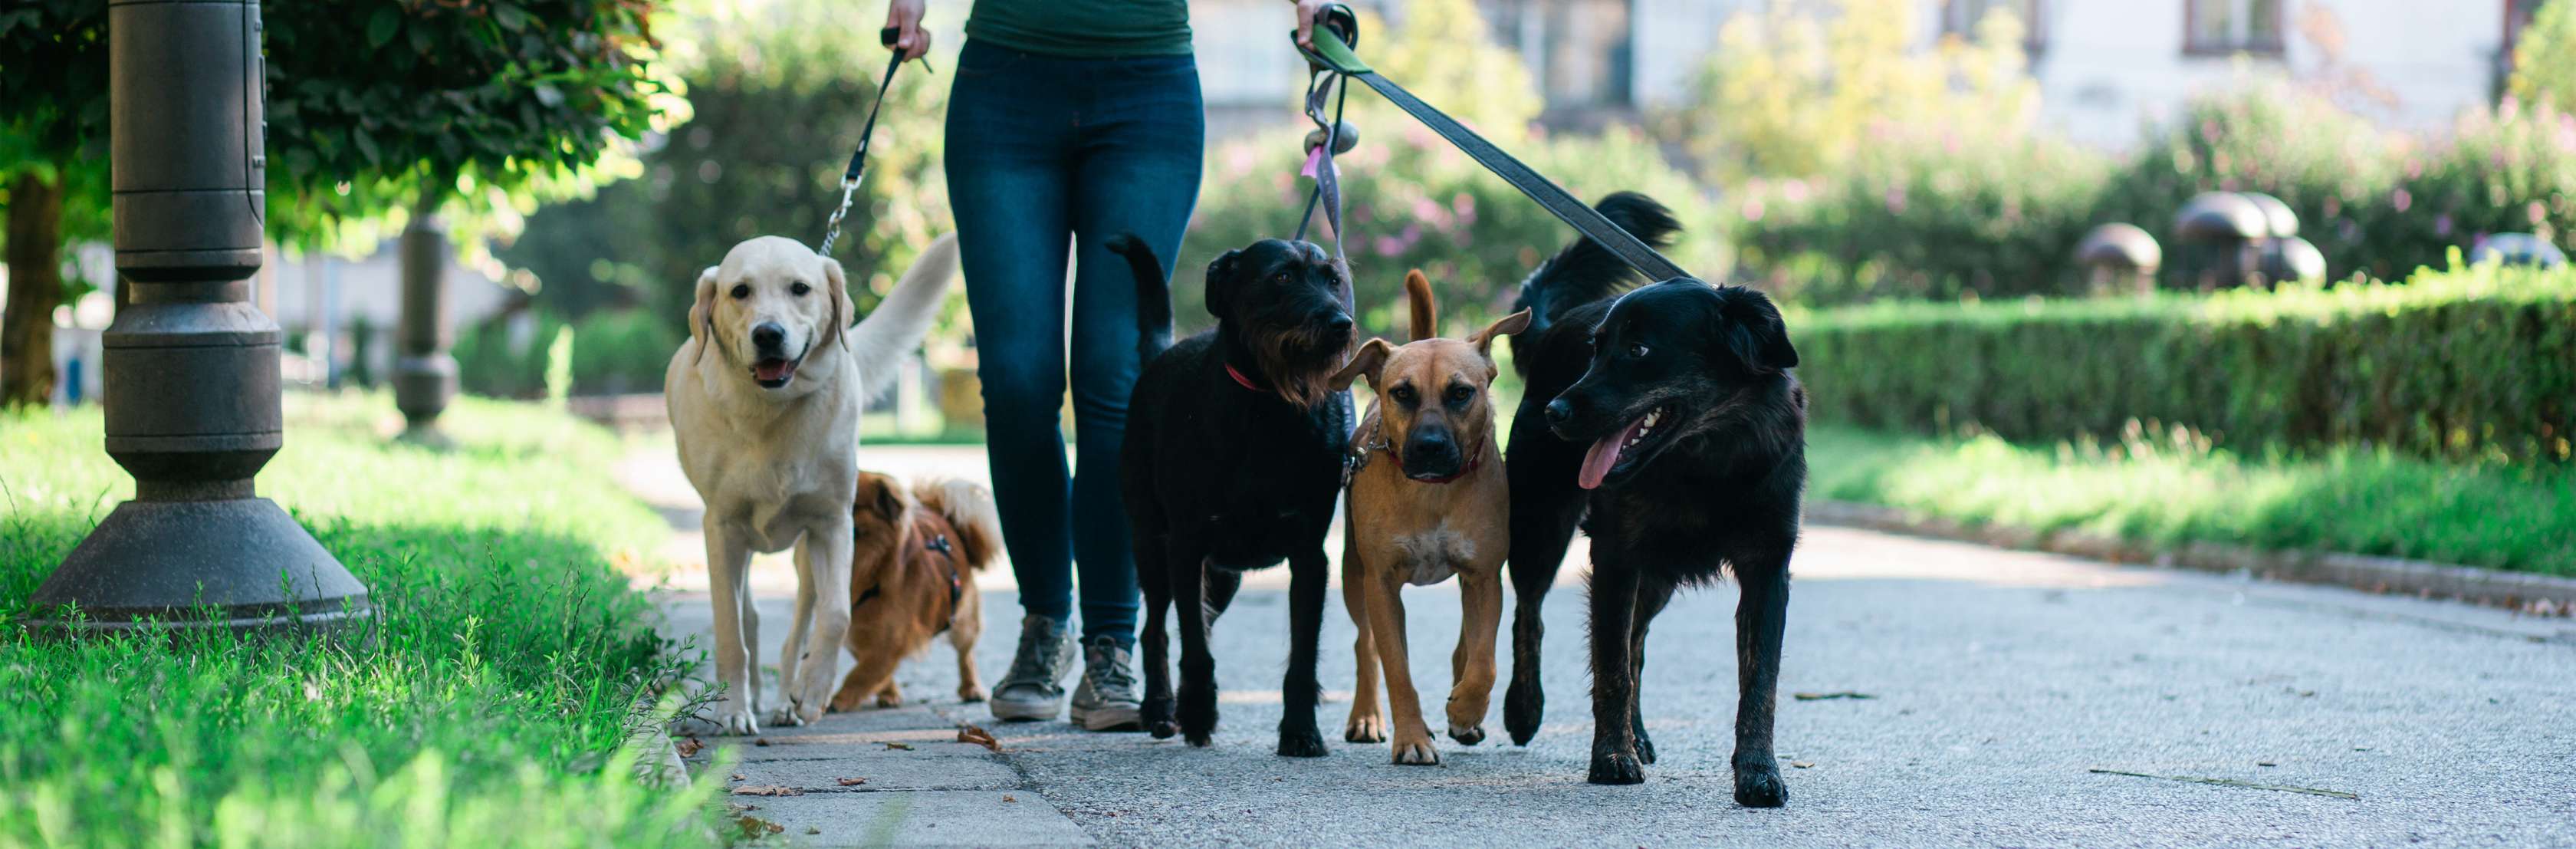 Hundesitter: Zahlt die Hundehaftpflicht für entstandene Schäden?